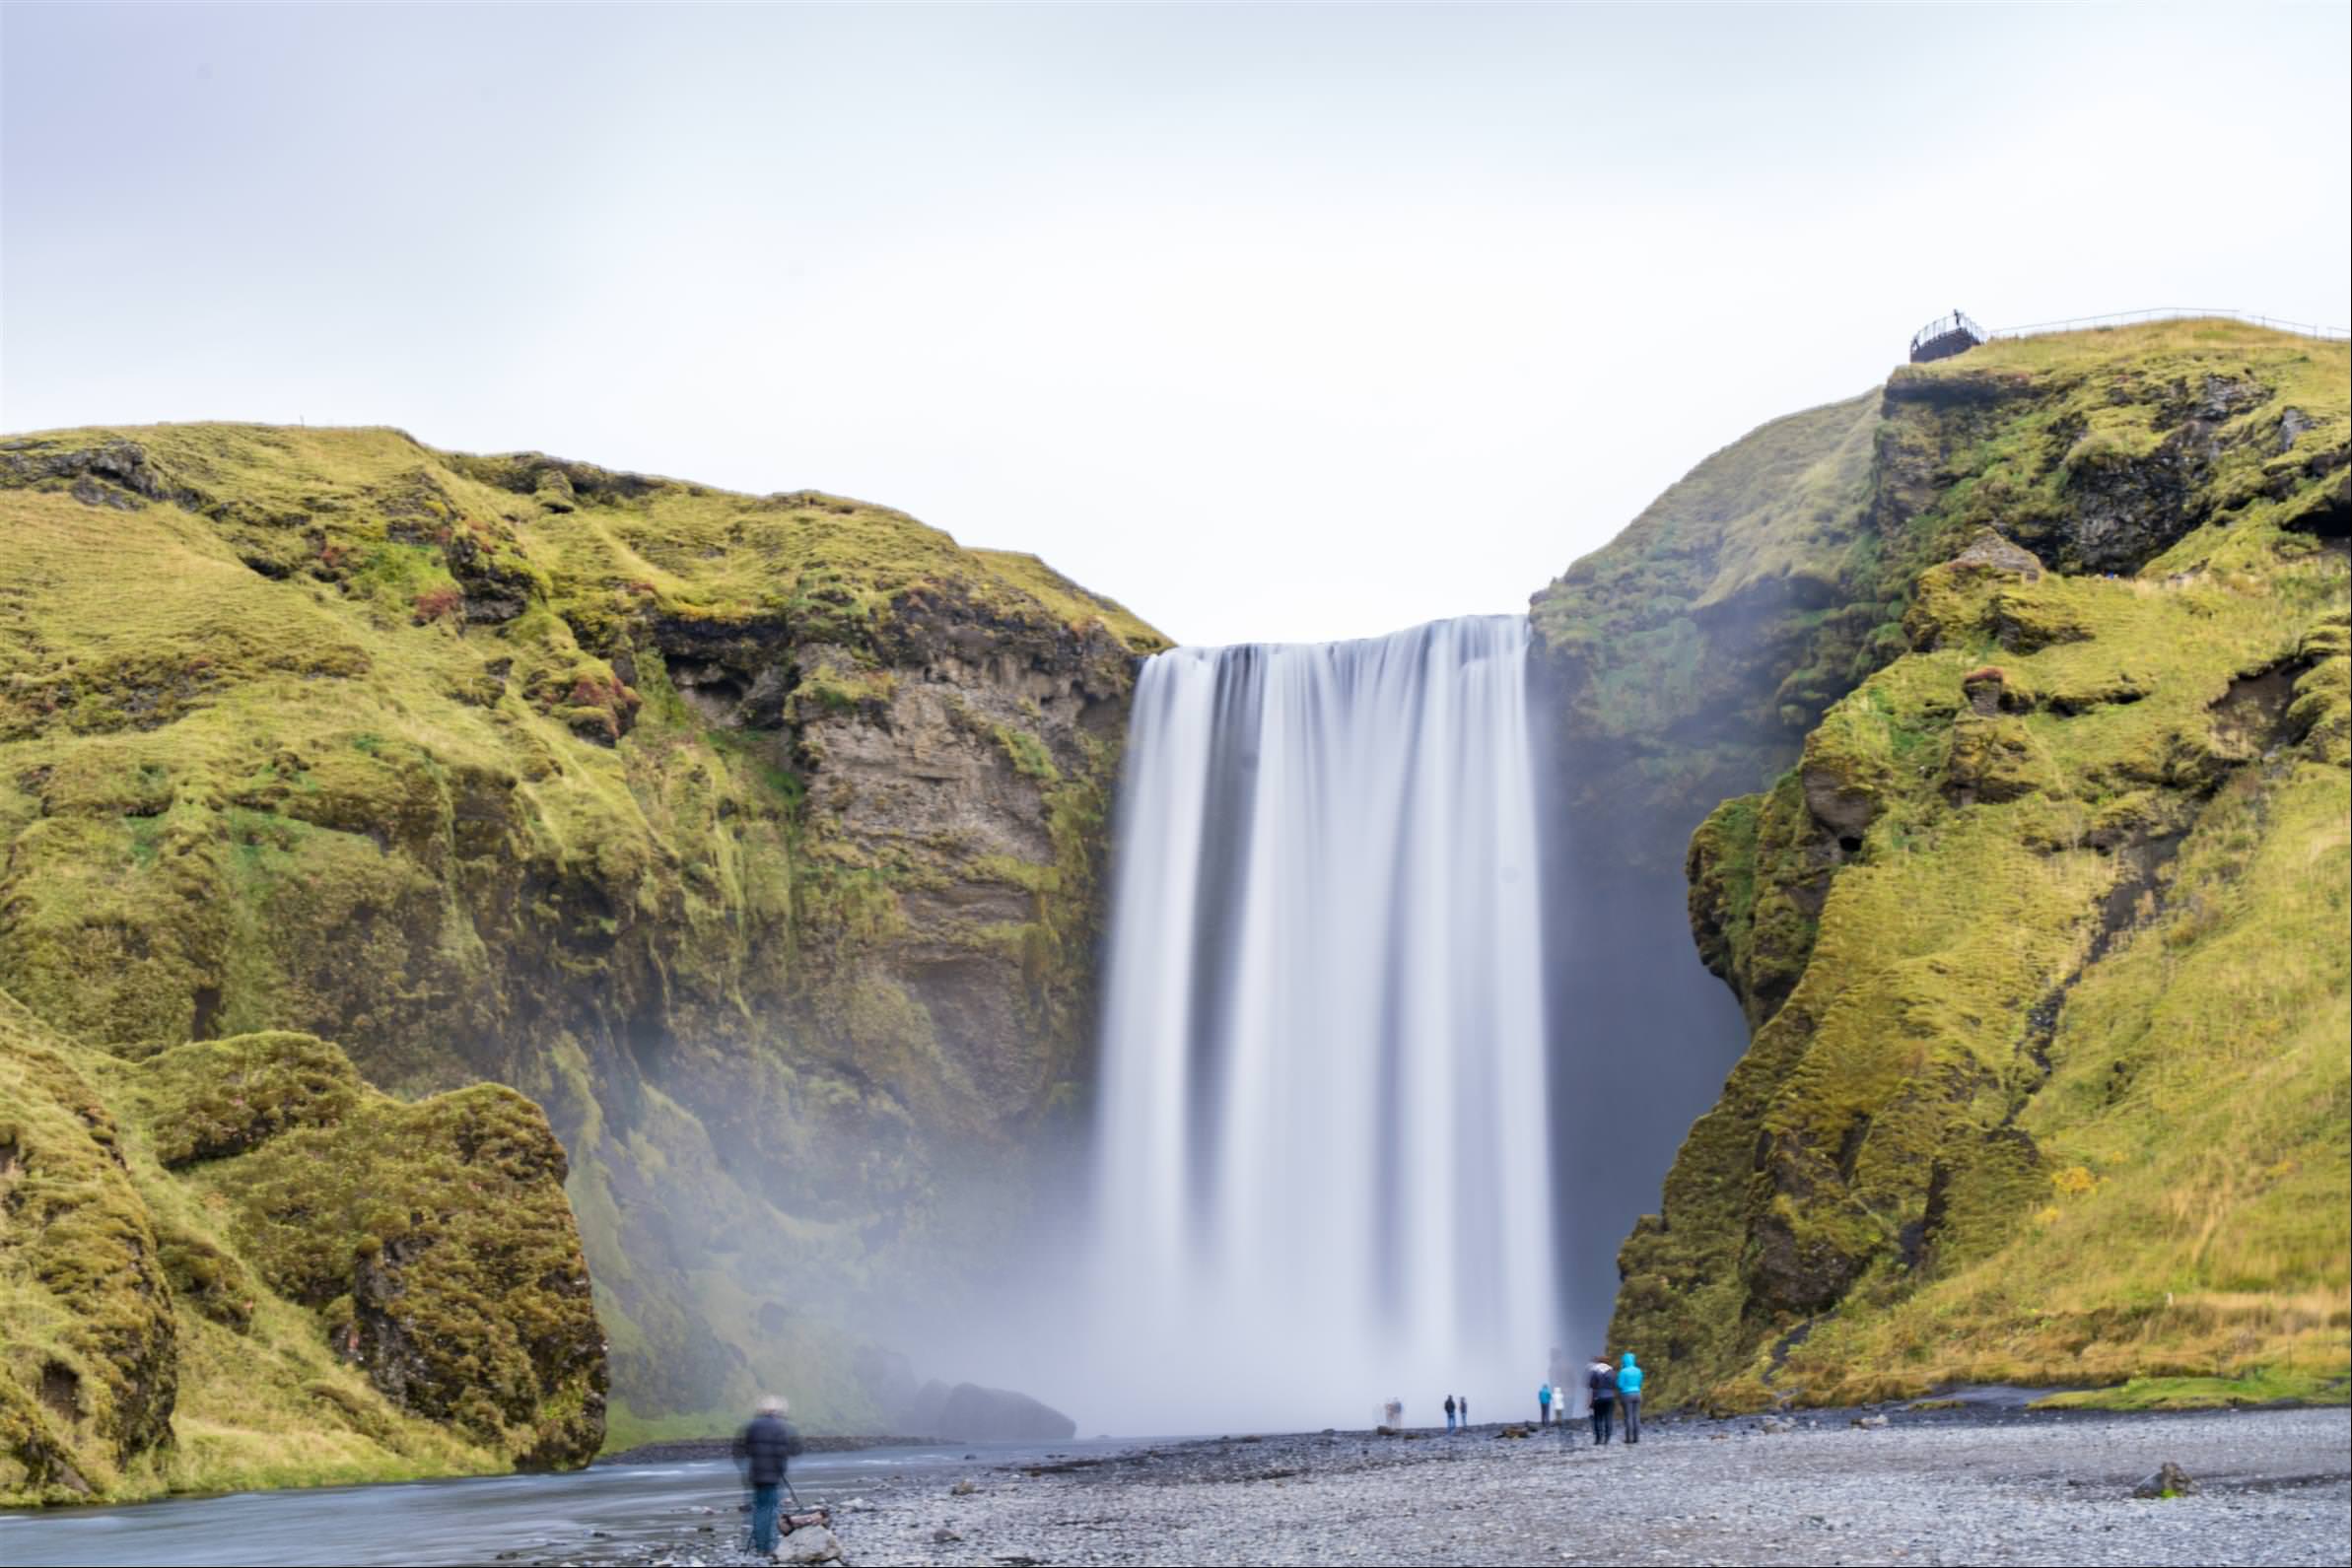 [2017冰島旅程] 冰島自助第 02 天：塞爾福斯 - 塞里雅蘭、史科加瀑布 - 維克與黑沙灘 - 霍夫